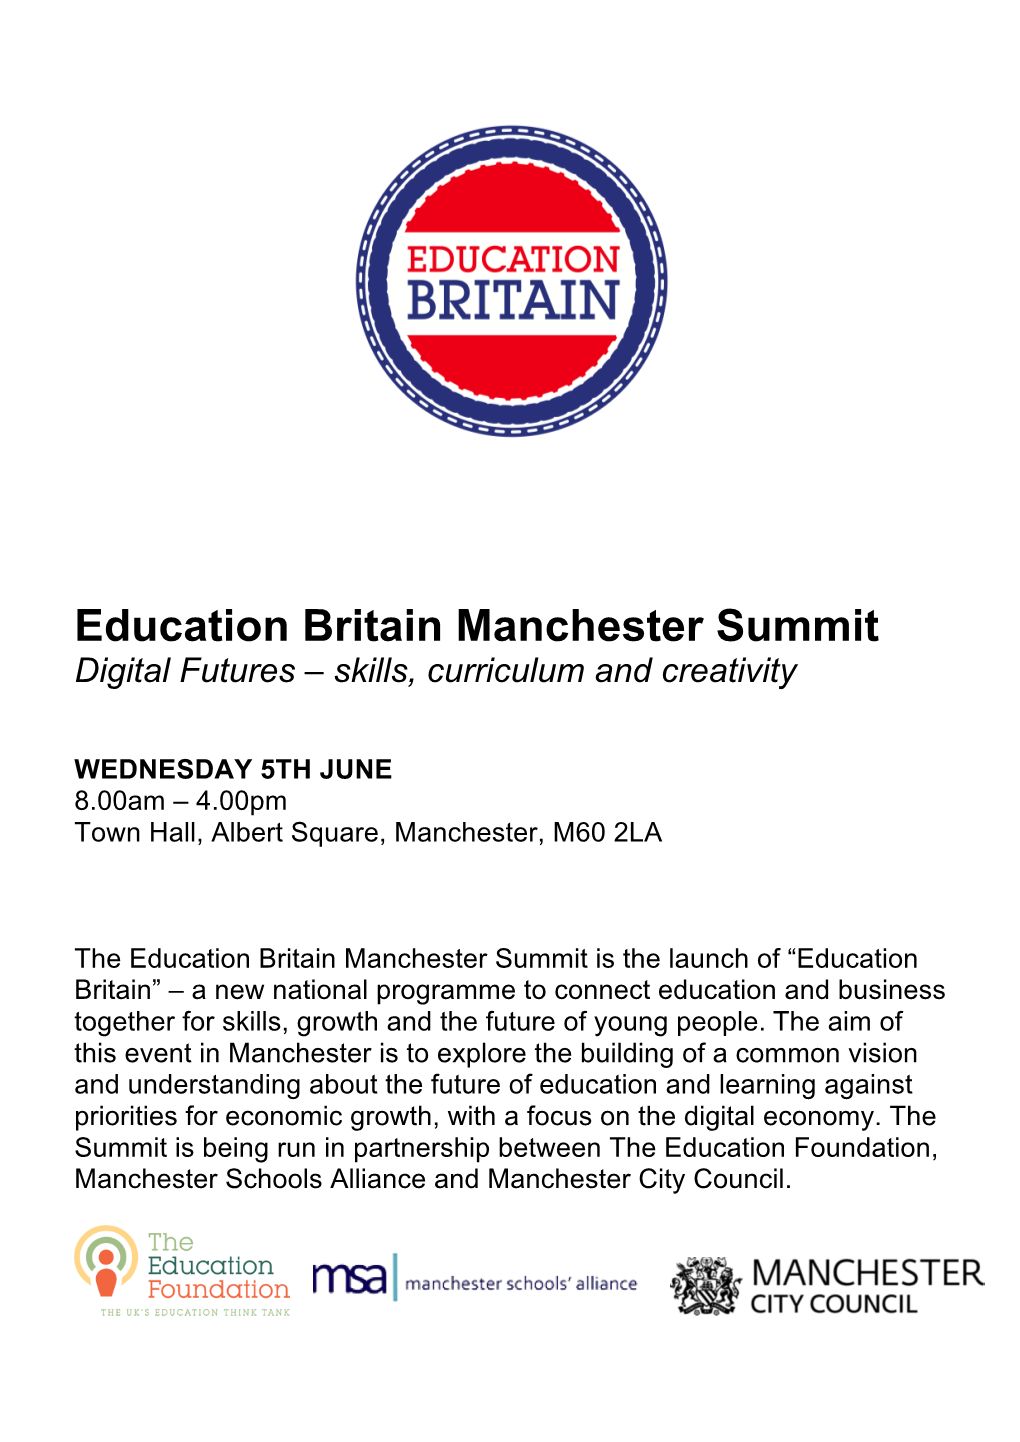 Ed Britain Manchester Summit Final